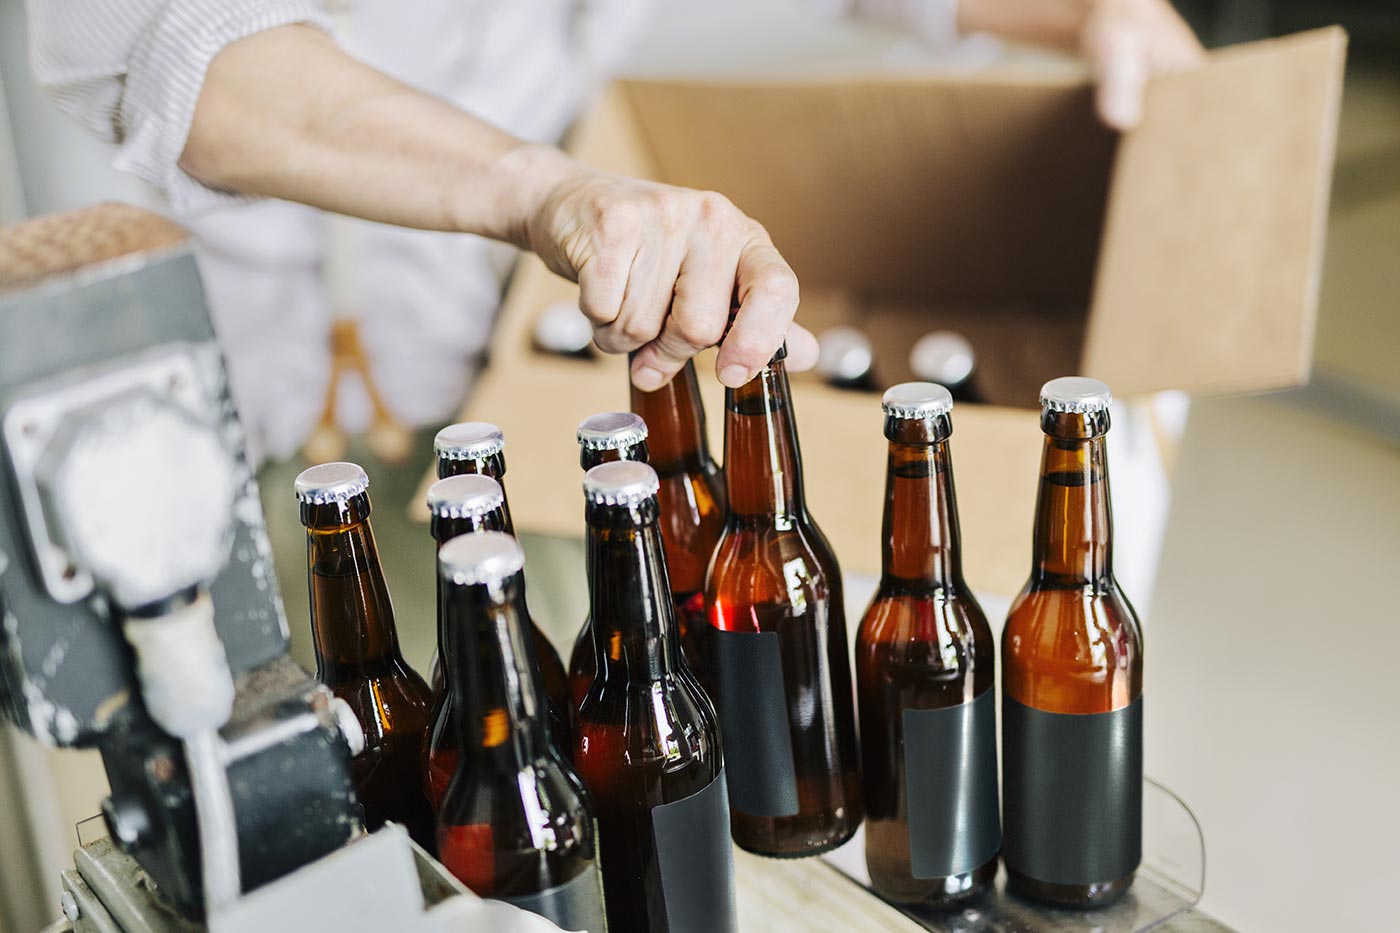 brewery-worker-preparing-beer-bottles-U498MD9